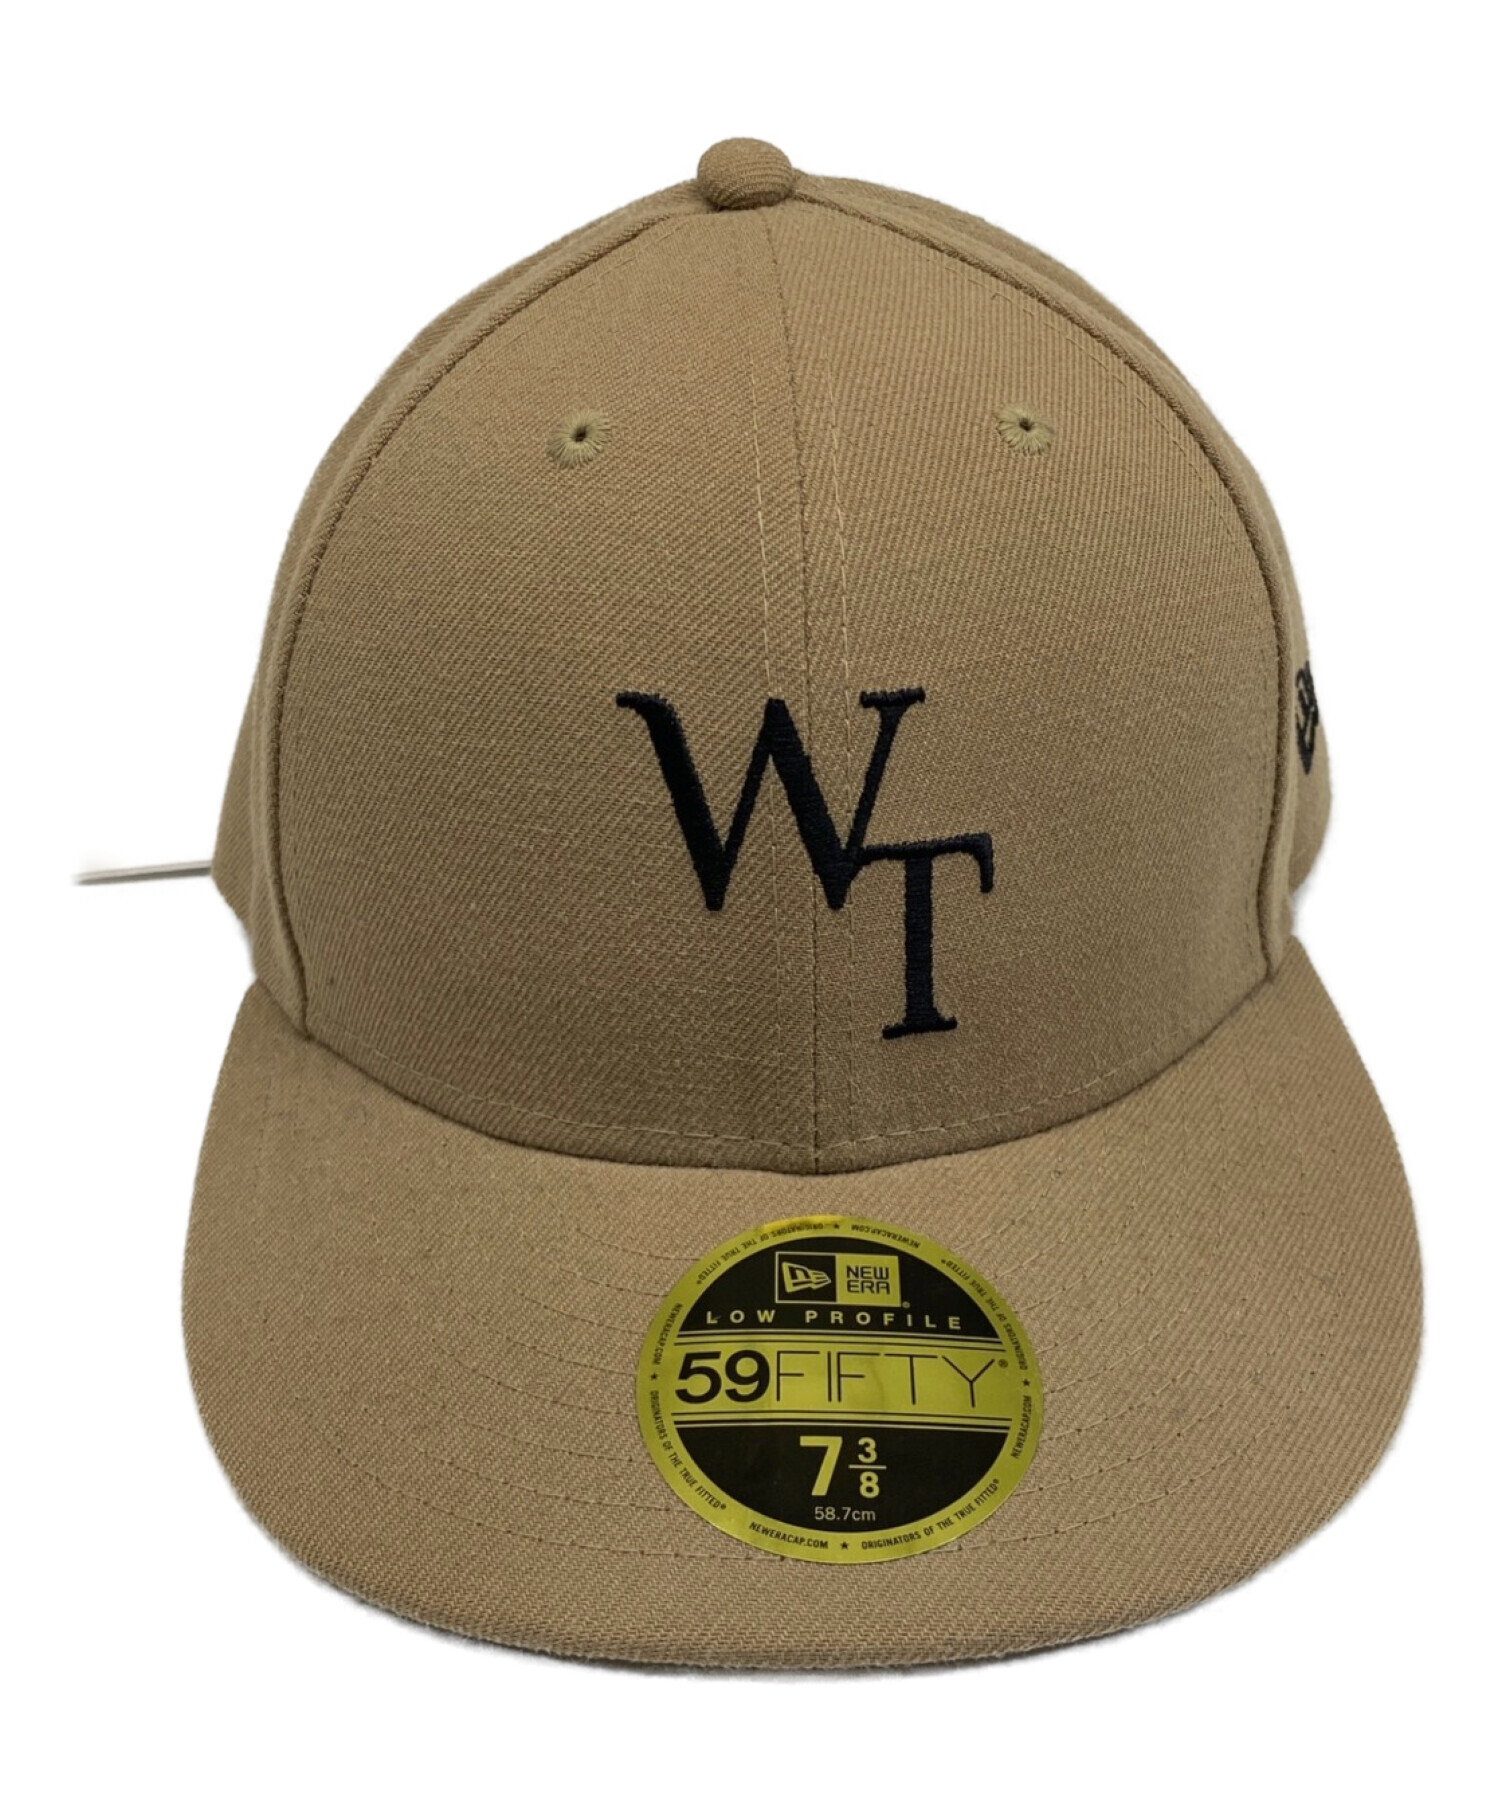 New Era (ニューエラ) WTAPS (ダブルタップス) 59FIFTY LOW PROFILE CAP ブラウン